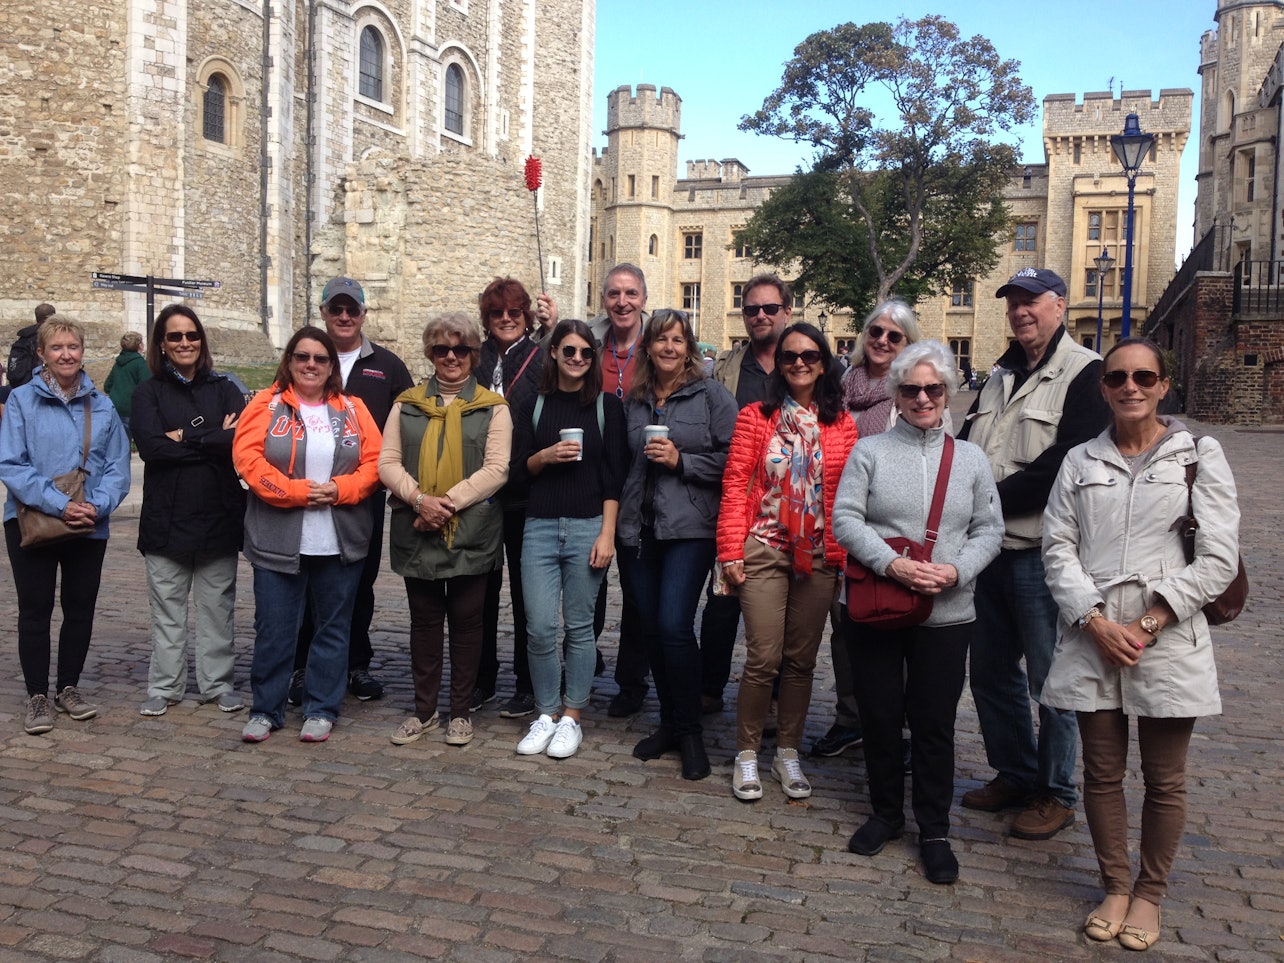 Acceso anticipado a la Torre de Londres: Visita completa con la Joya de la Corona y la Ceremonia de Apertura - Alojamientos en Londres